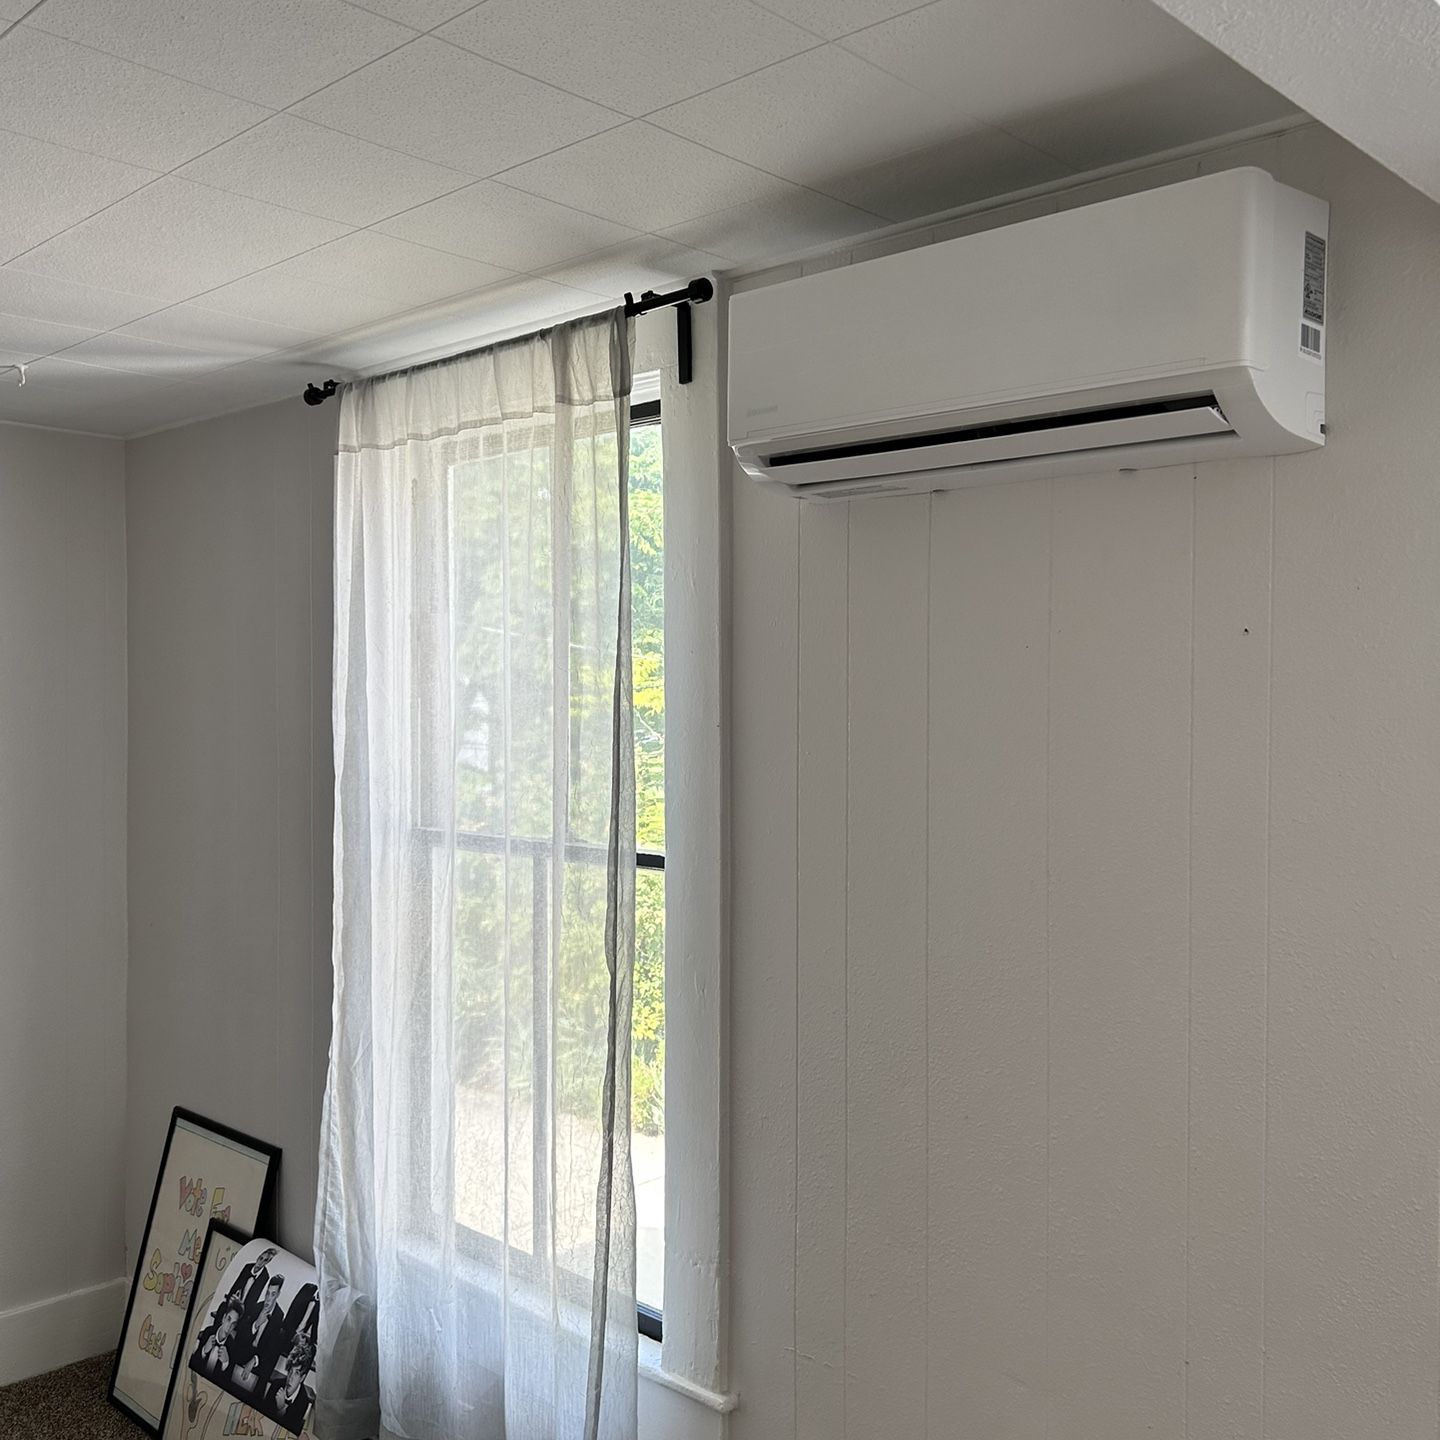 12000btu mini split air conditioner with heat pump